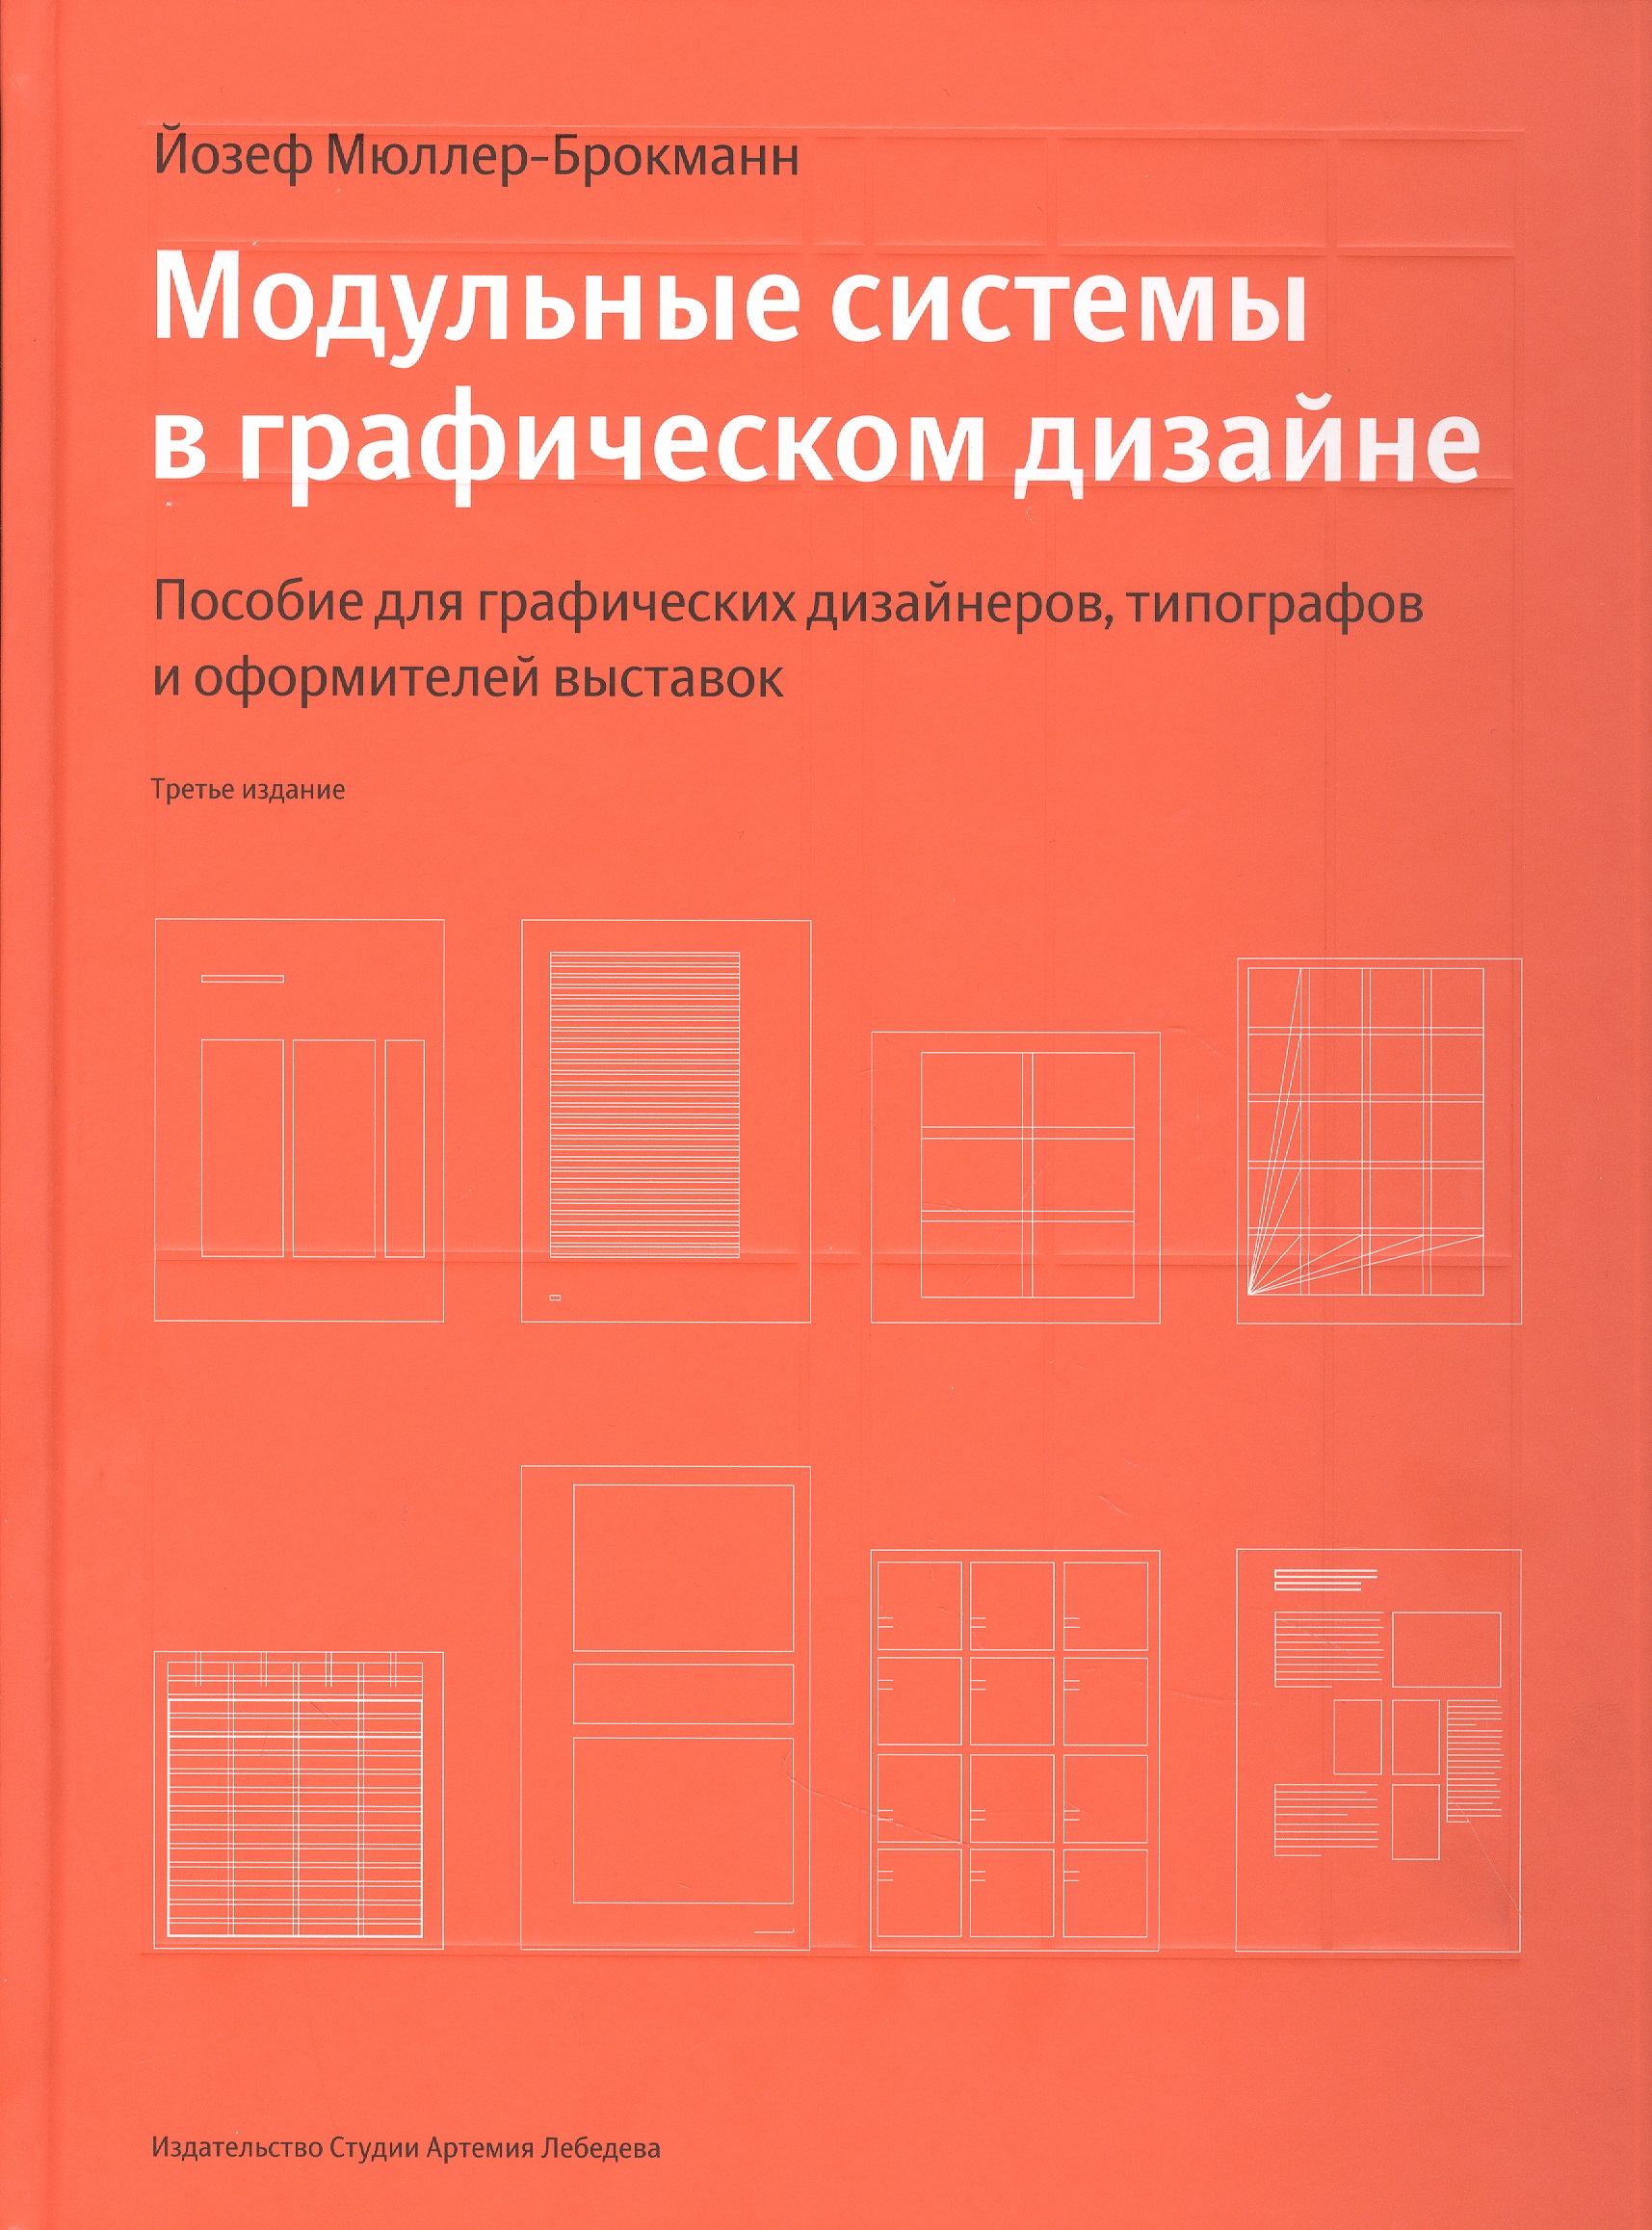 

Модульные системы в графическом дизайне (Третье издание)